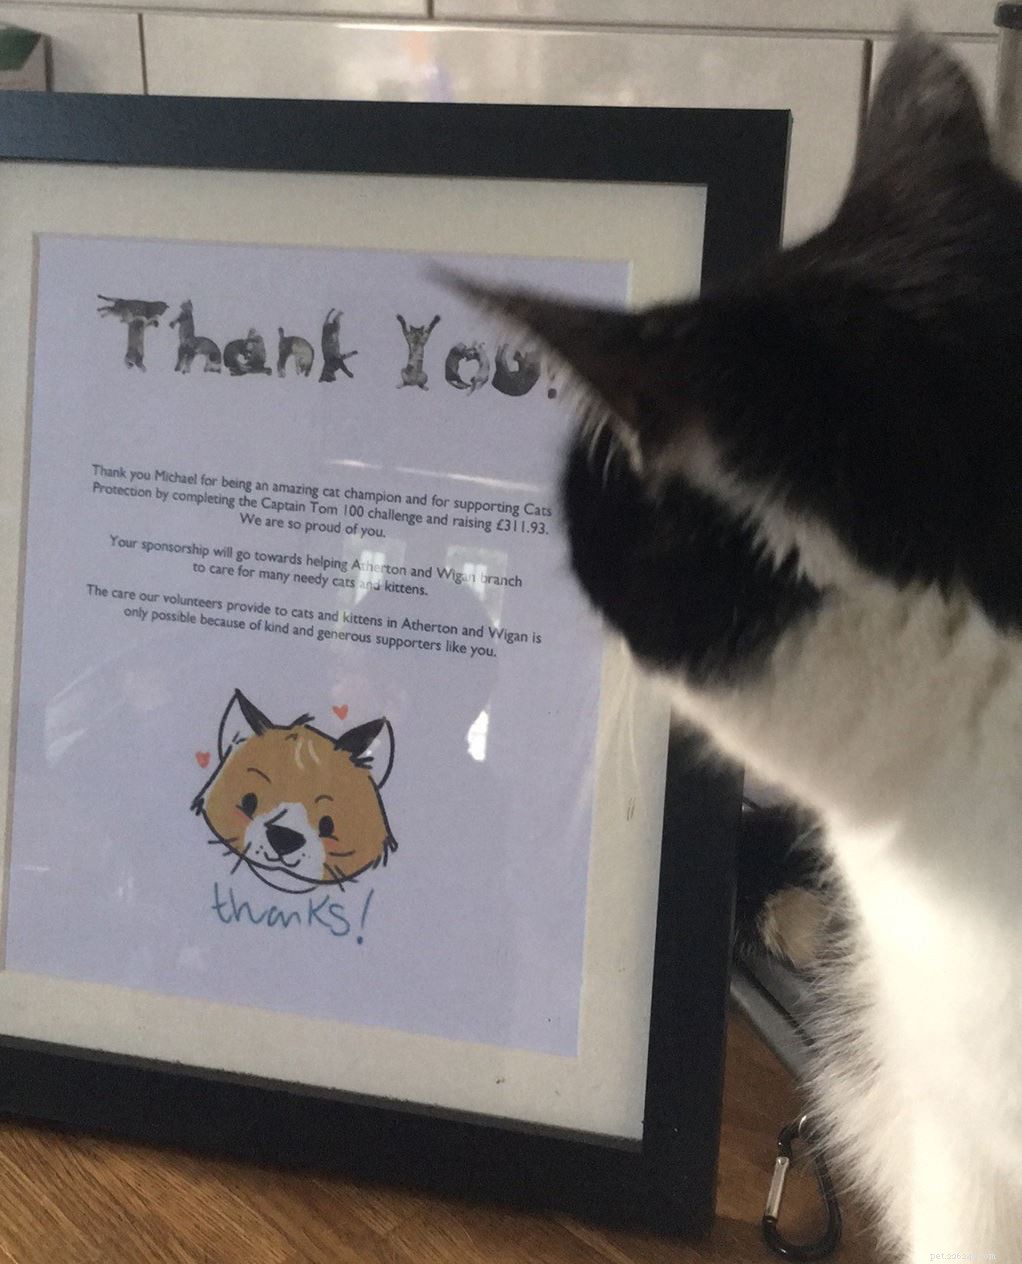 11-årige Michael Hart från Wigan underhöll både katter och Facebook-följare för att samla in £300 till en välgörenhetsorganisation som ligger honom varmt om hjärtat